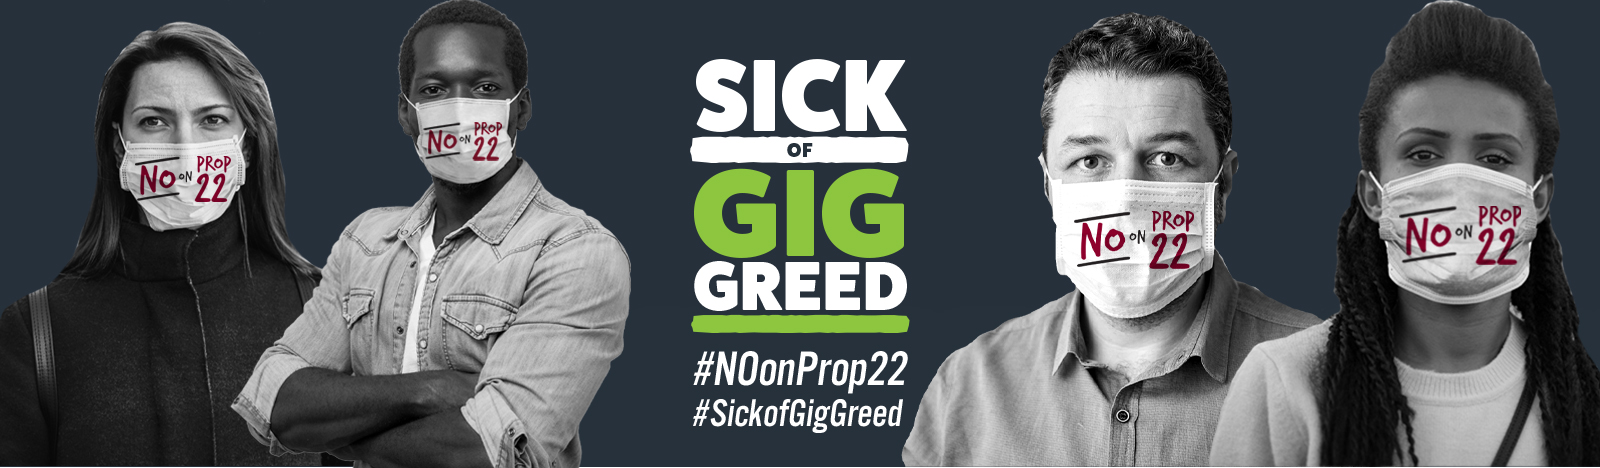 Sick of GIG Greed #NOonProp22 #SickOfGigGreed